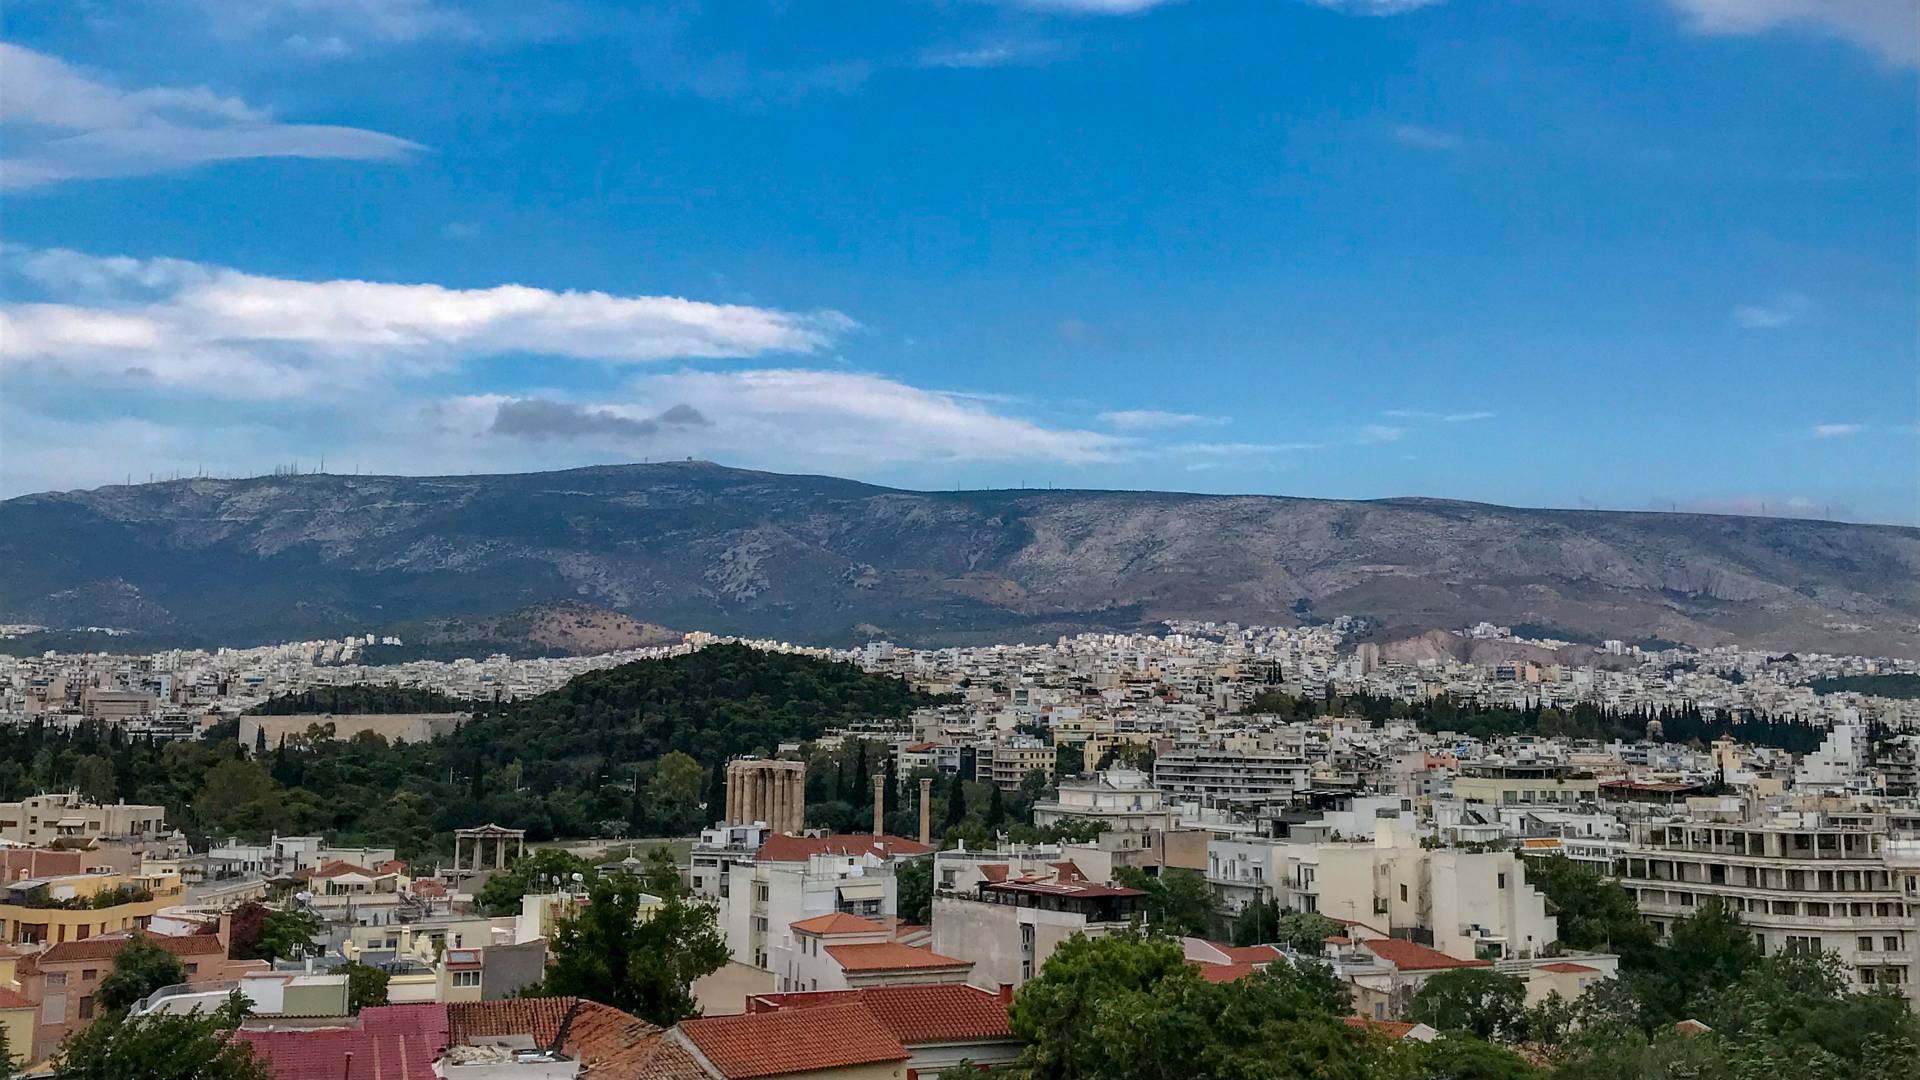 Vista of Athens, Greece